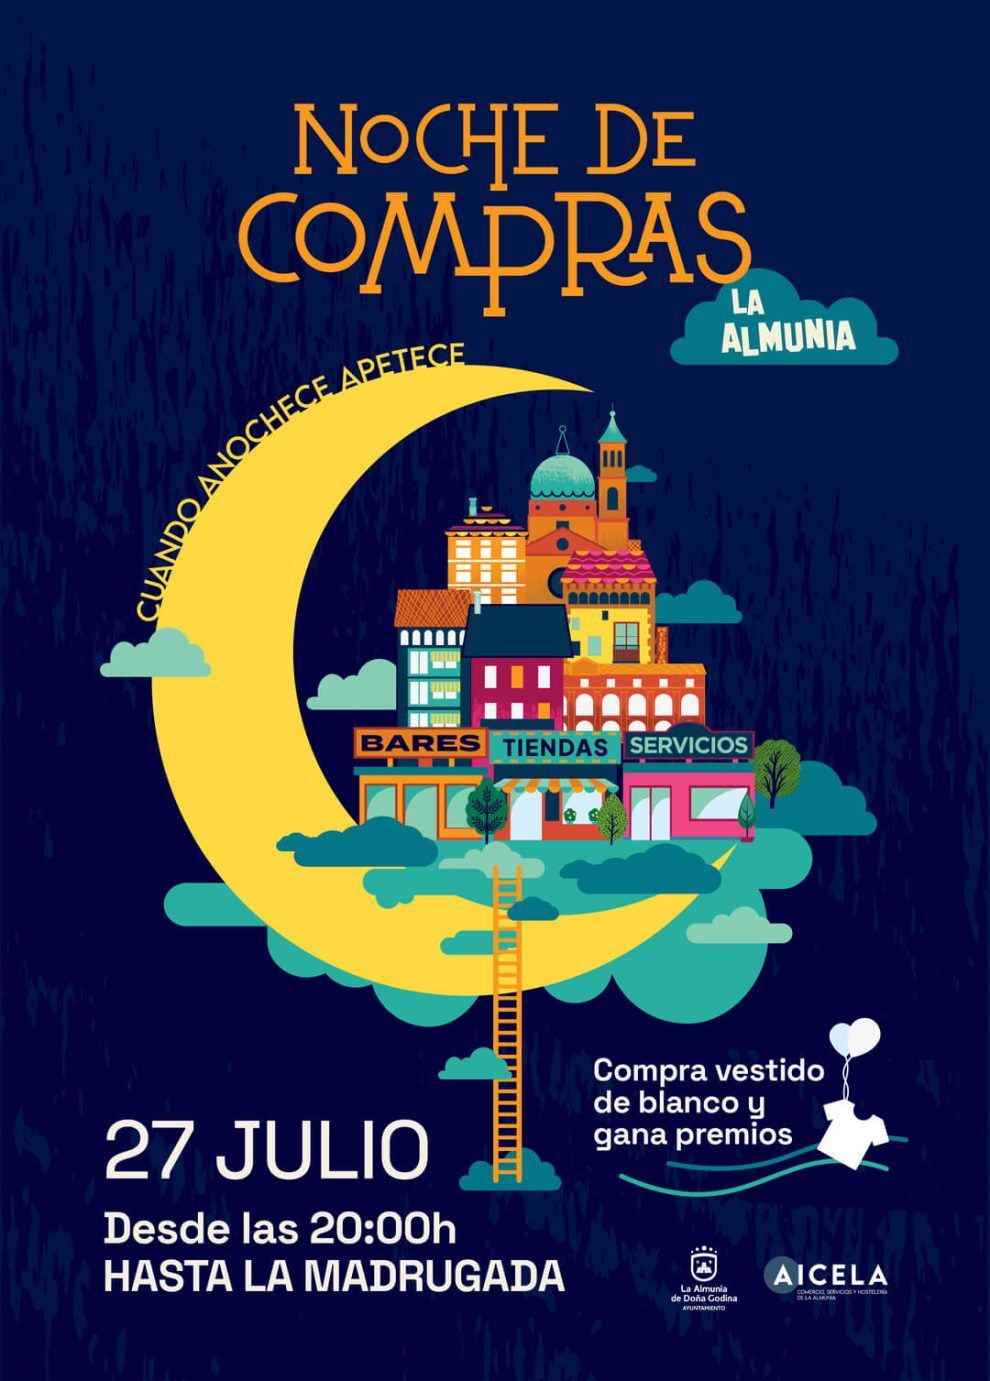 La Noche de Compras de AICELA cerrará el mes de julio con descuentos, cenas y muchos premios